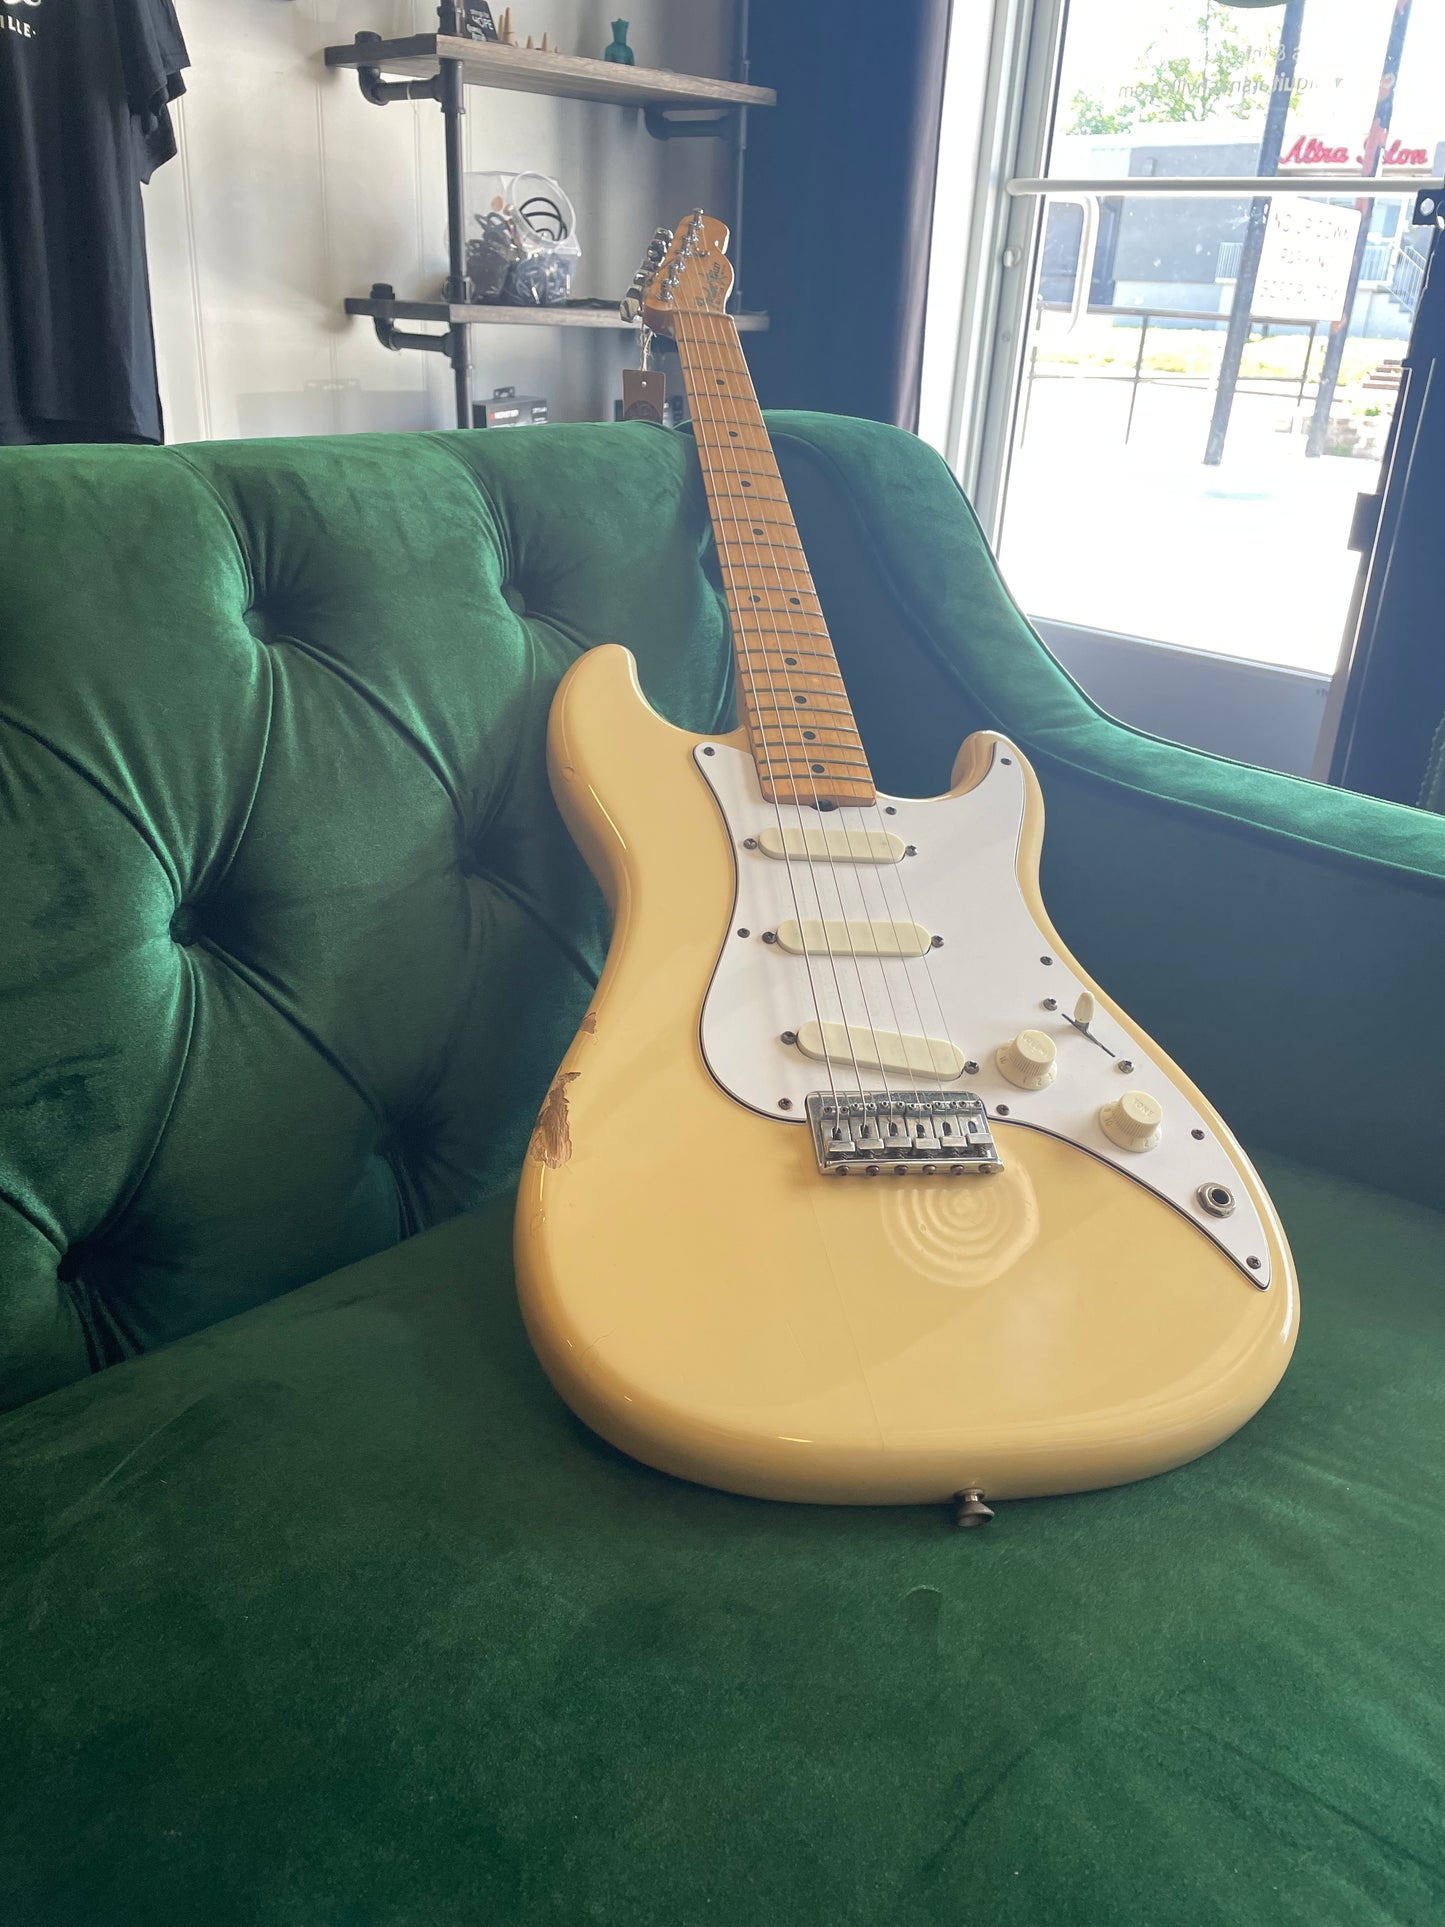 1980-82 Fender Stratocaster “Bullet”